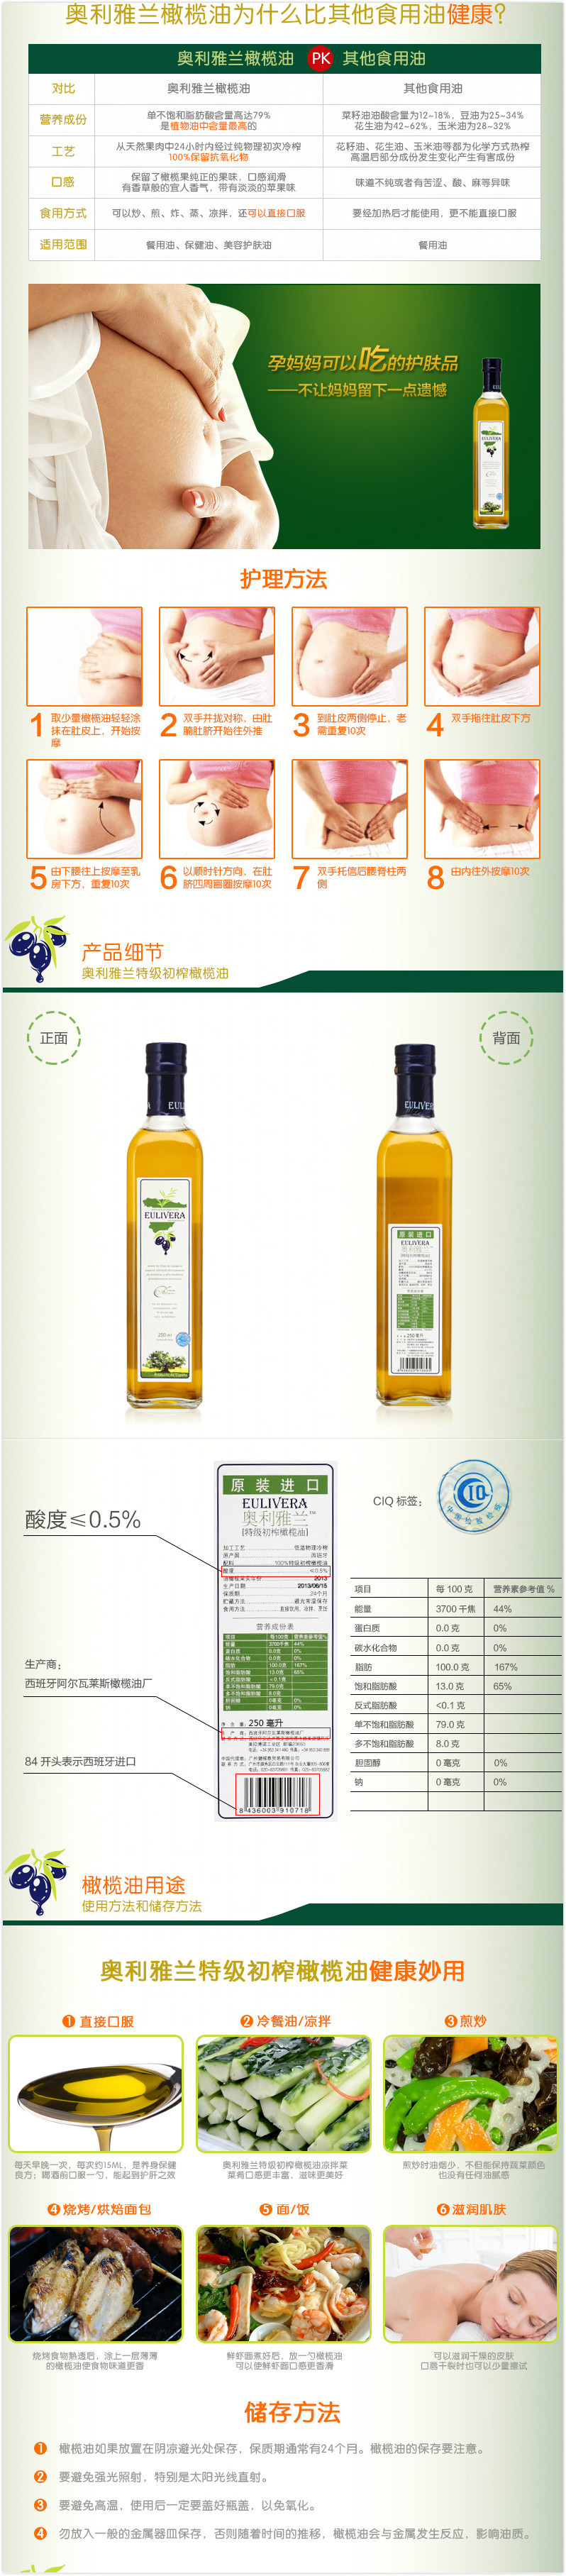 原装进口奥利雅兰橄榄油250ml 西班牙进口特级初榨橄榄油  食用油